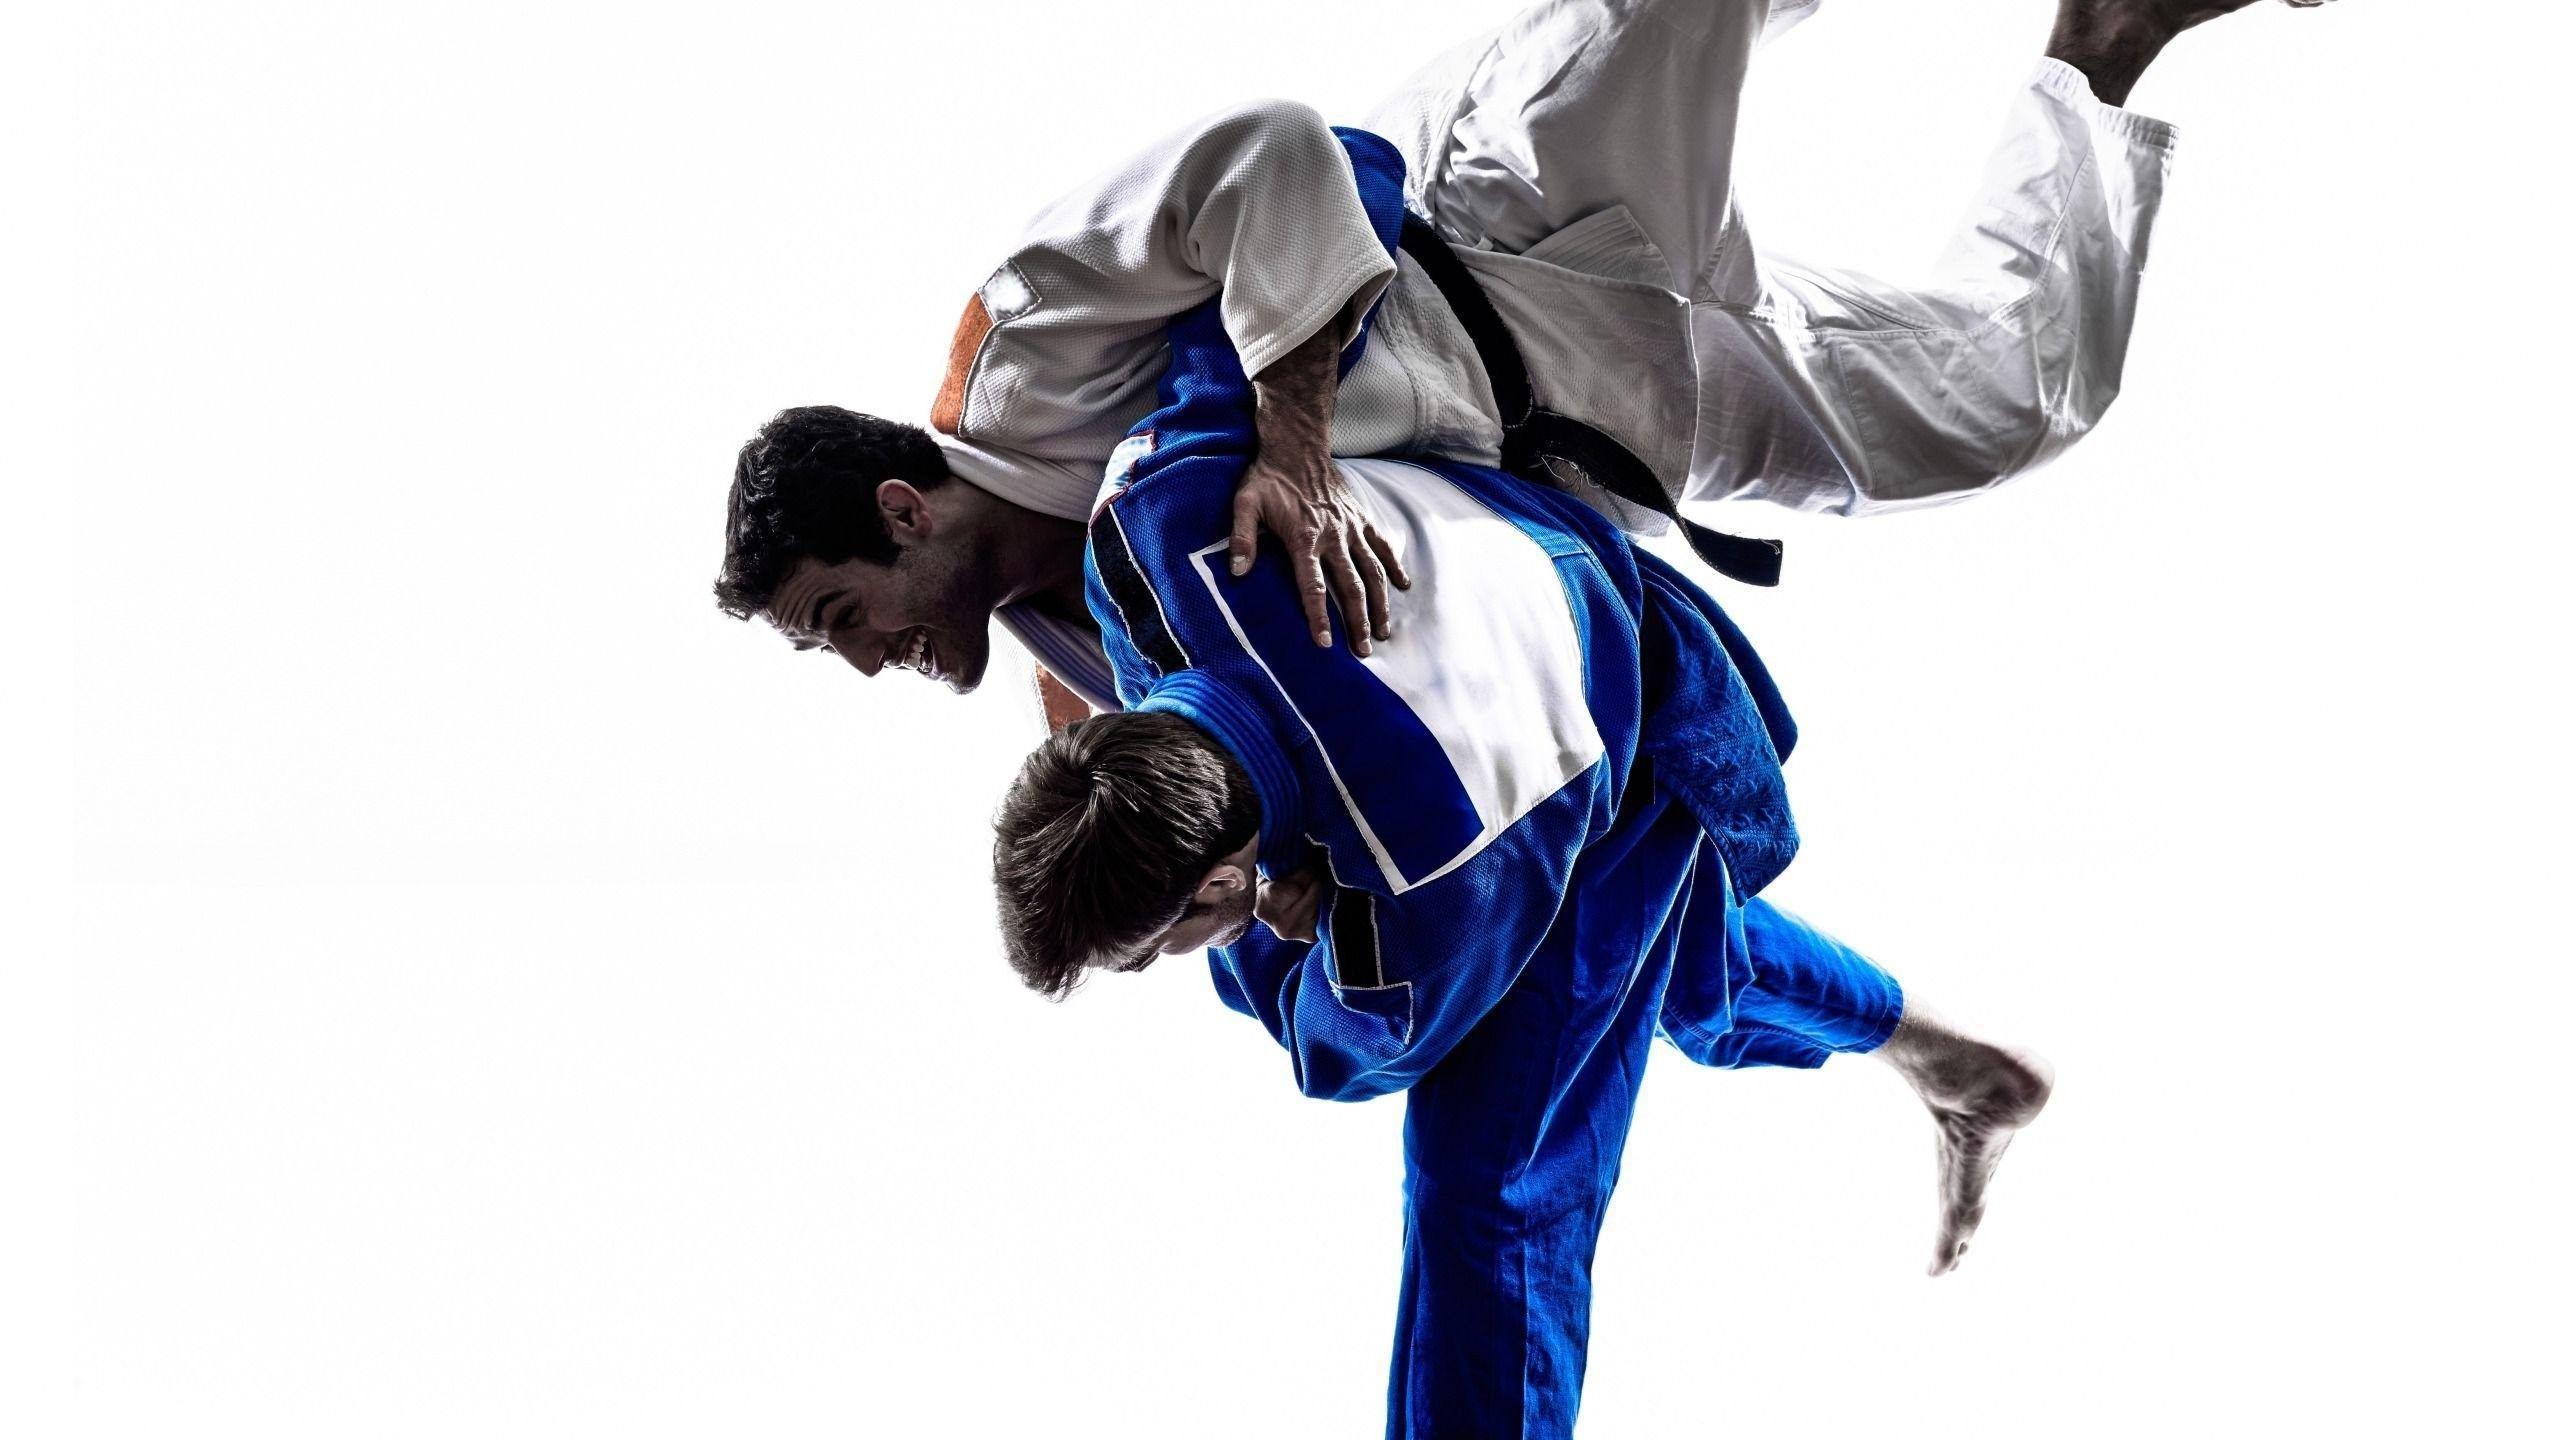 Download Wallpaper Judo, Fight, Training, Technique, Skill, Sports